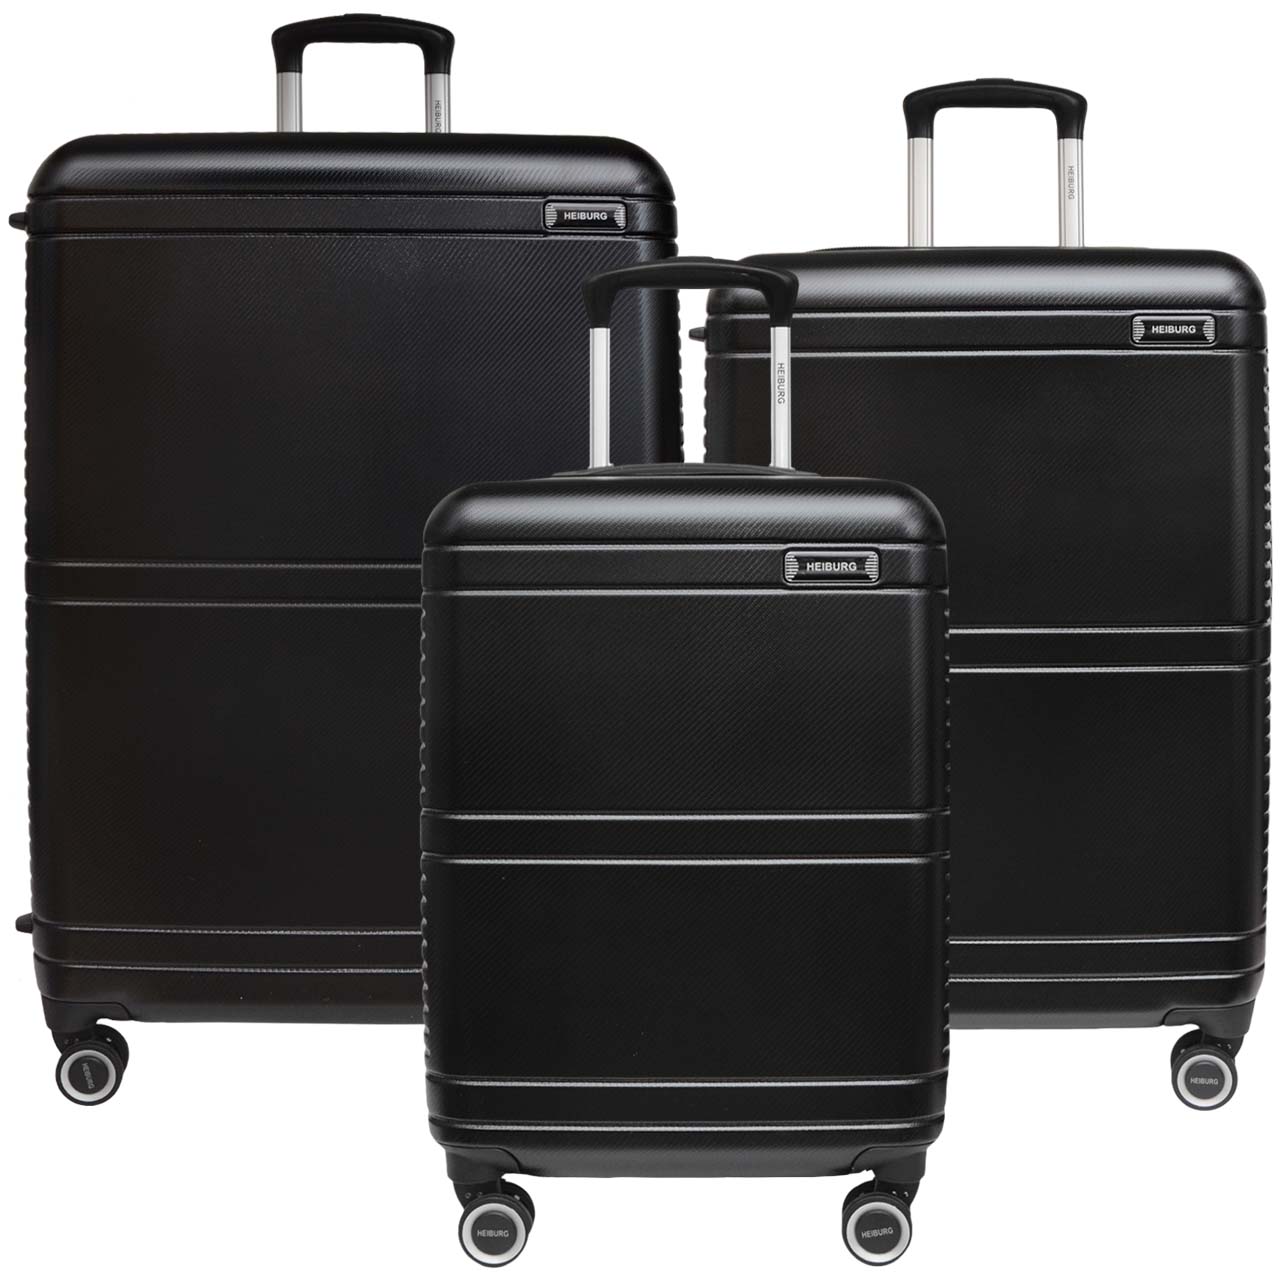 مجموعه سه عددی چمدان هایبورگ مدل Alpha 700672